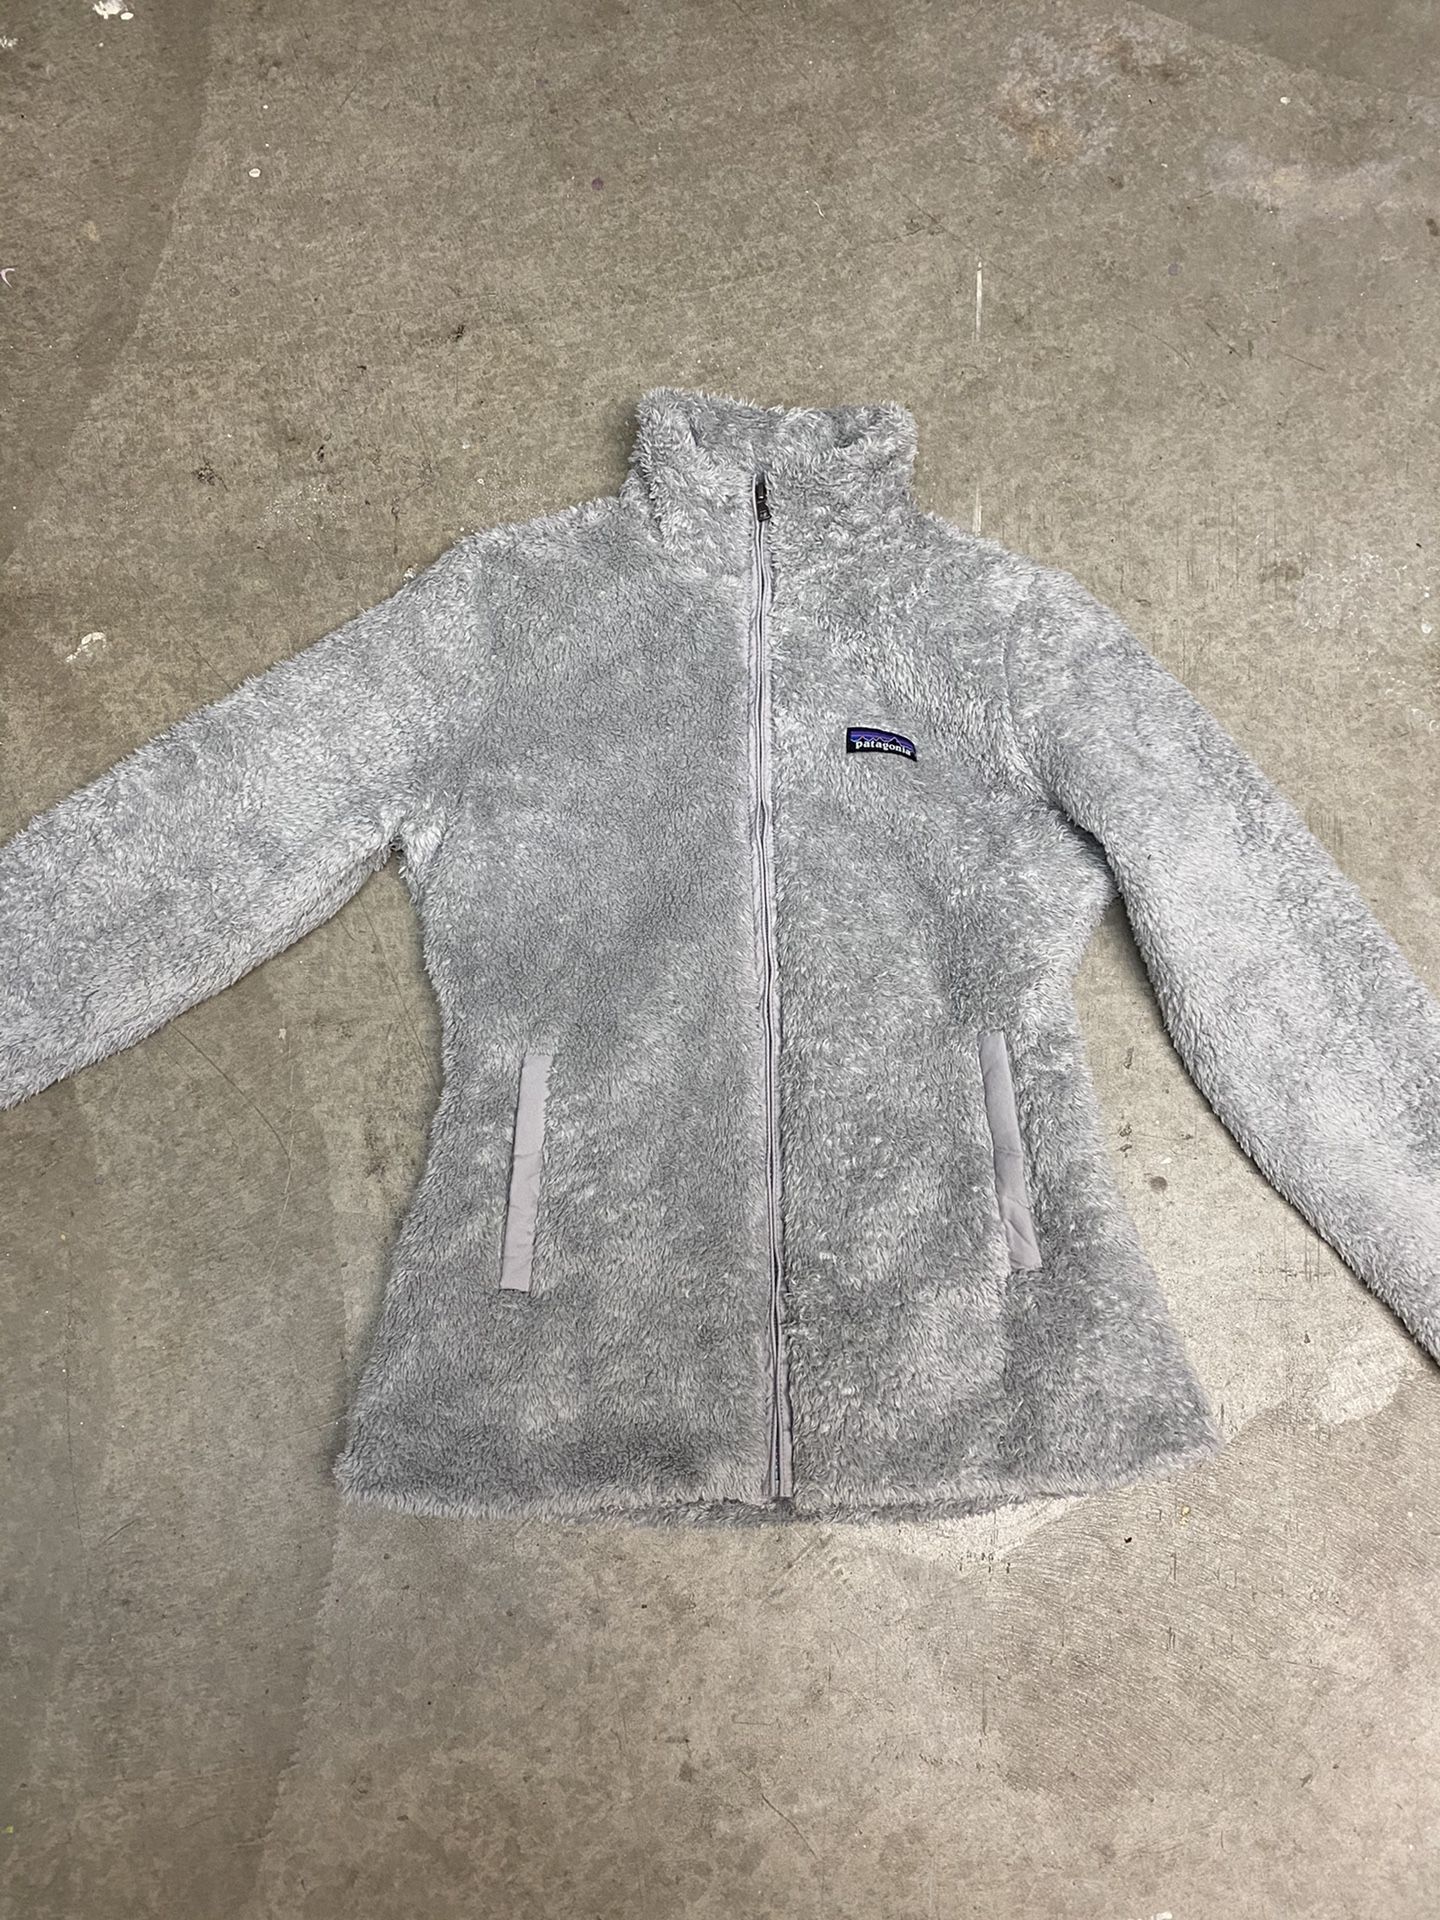 Patagonia Women’s jacket (size M)